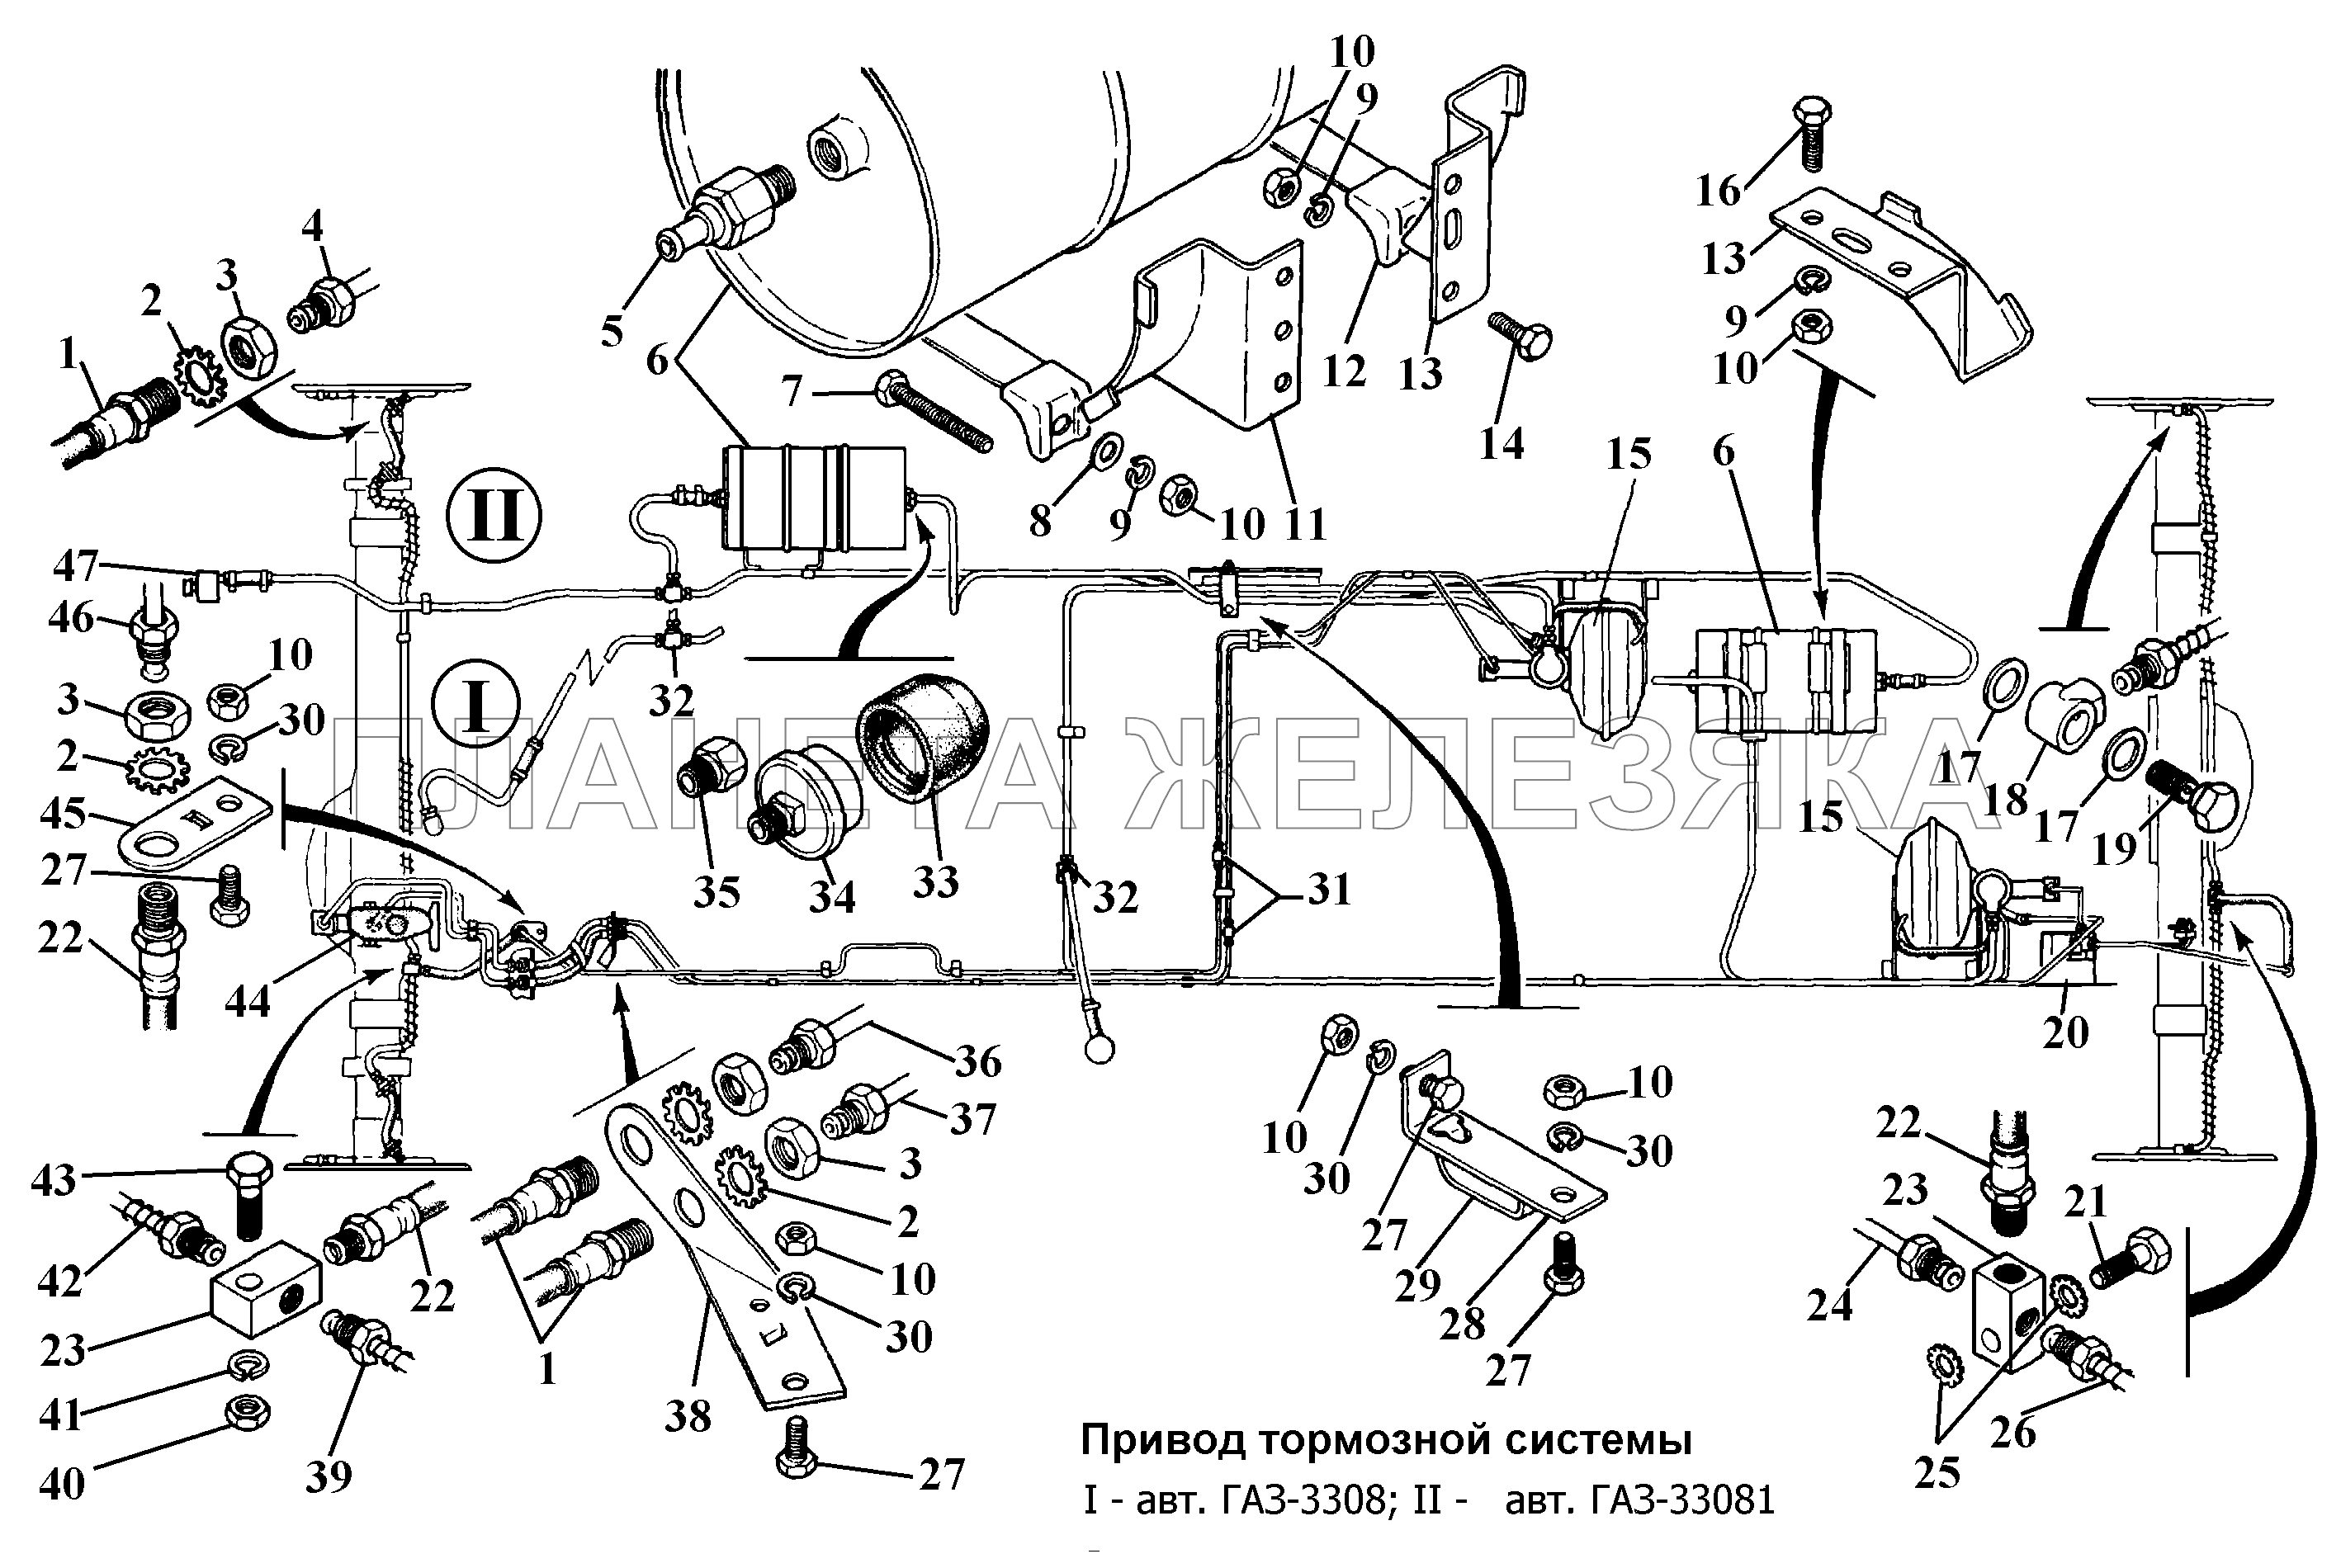 Привод тормозной системы ГАЗ-3308